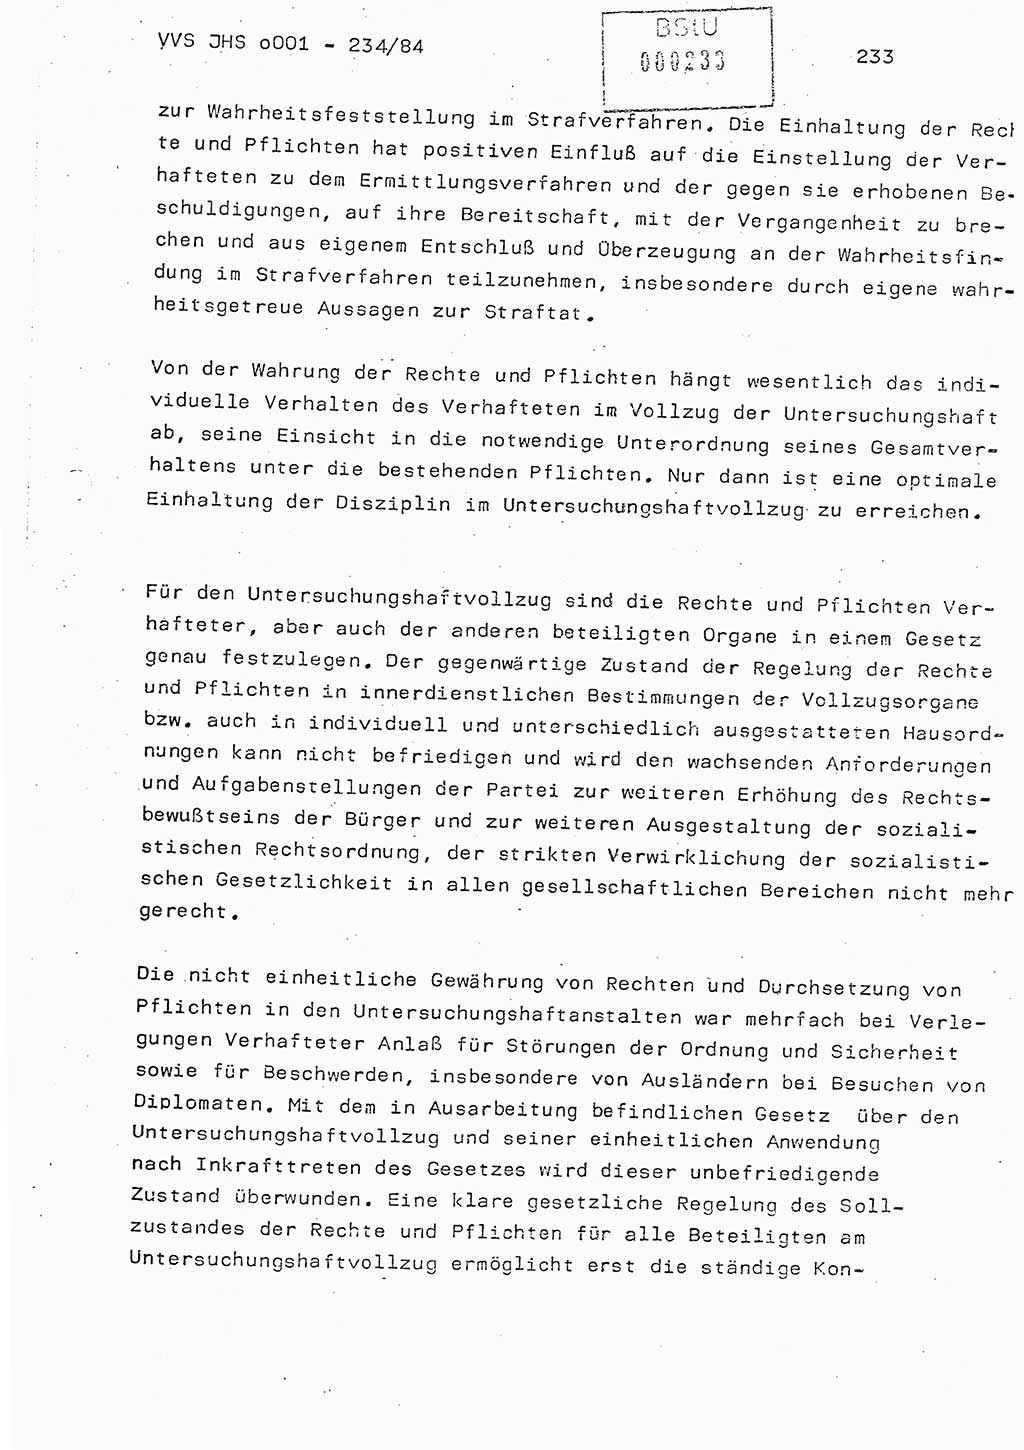 Dissertation Oberst Siegfried Rataizick (Abt. ⅩⅣ), Oberstleutnant Volkmar Heinz (Abt. ⅩⅣ), Oberstleutnant Werner Stein (HA Ⅸ), Hauptmann Heinz Conrad (JHS), Ministerium für Staatssicherheit (MfS) [Deutsche Demokratische Republik (DDR)], Juristische Hochschule (JHS), Vertrauliche Verschlußsache (VVS) o001-234/84, Potsdam 1984, Seite 233 (Diss. MfS DDR JHS VVS o001-234/84 1984, S. 233)